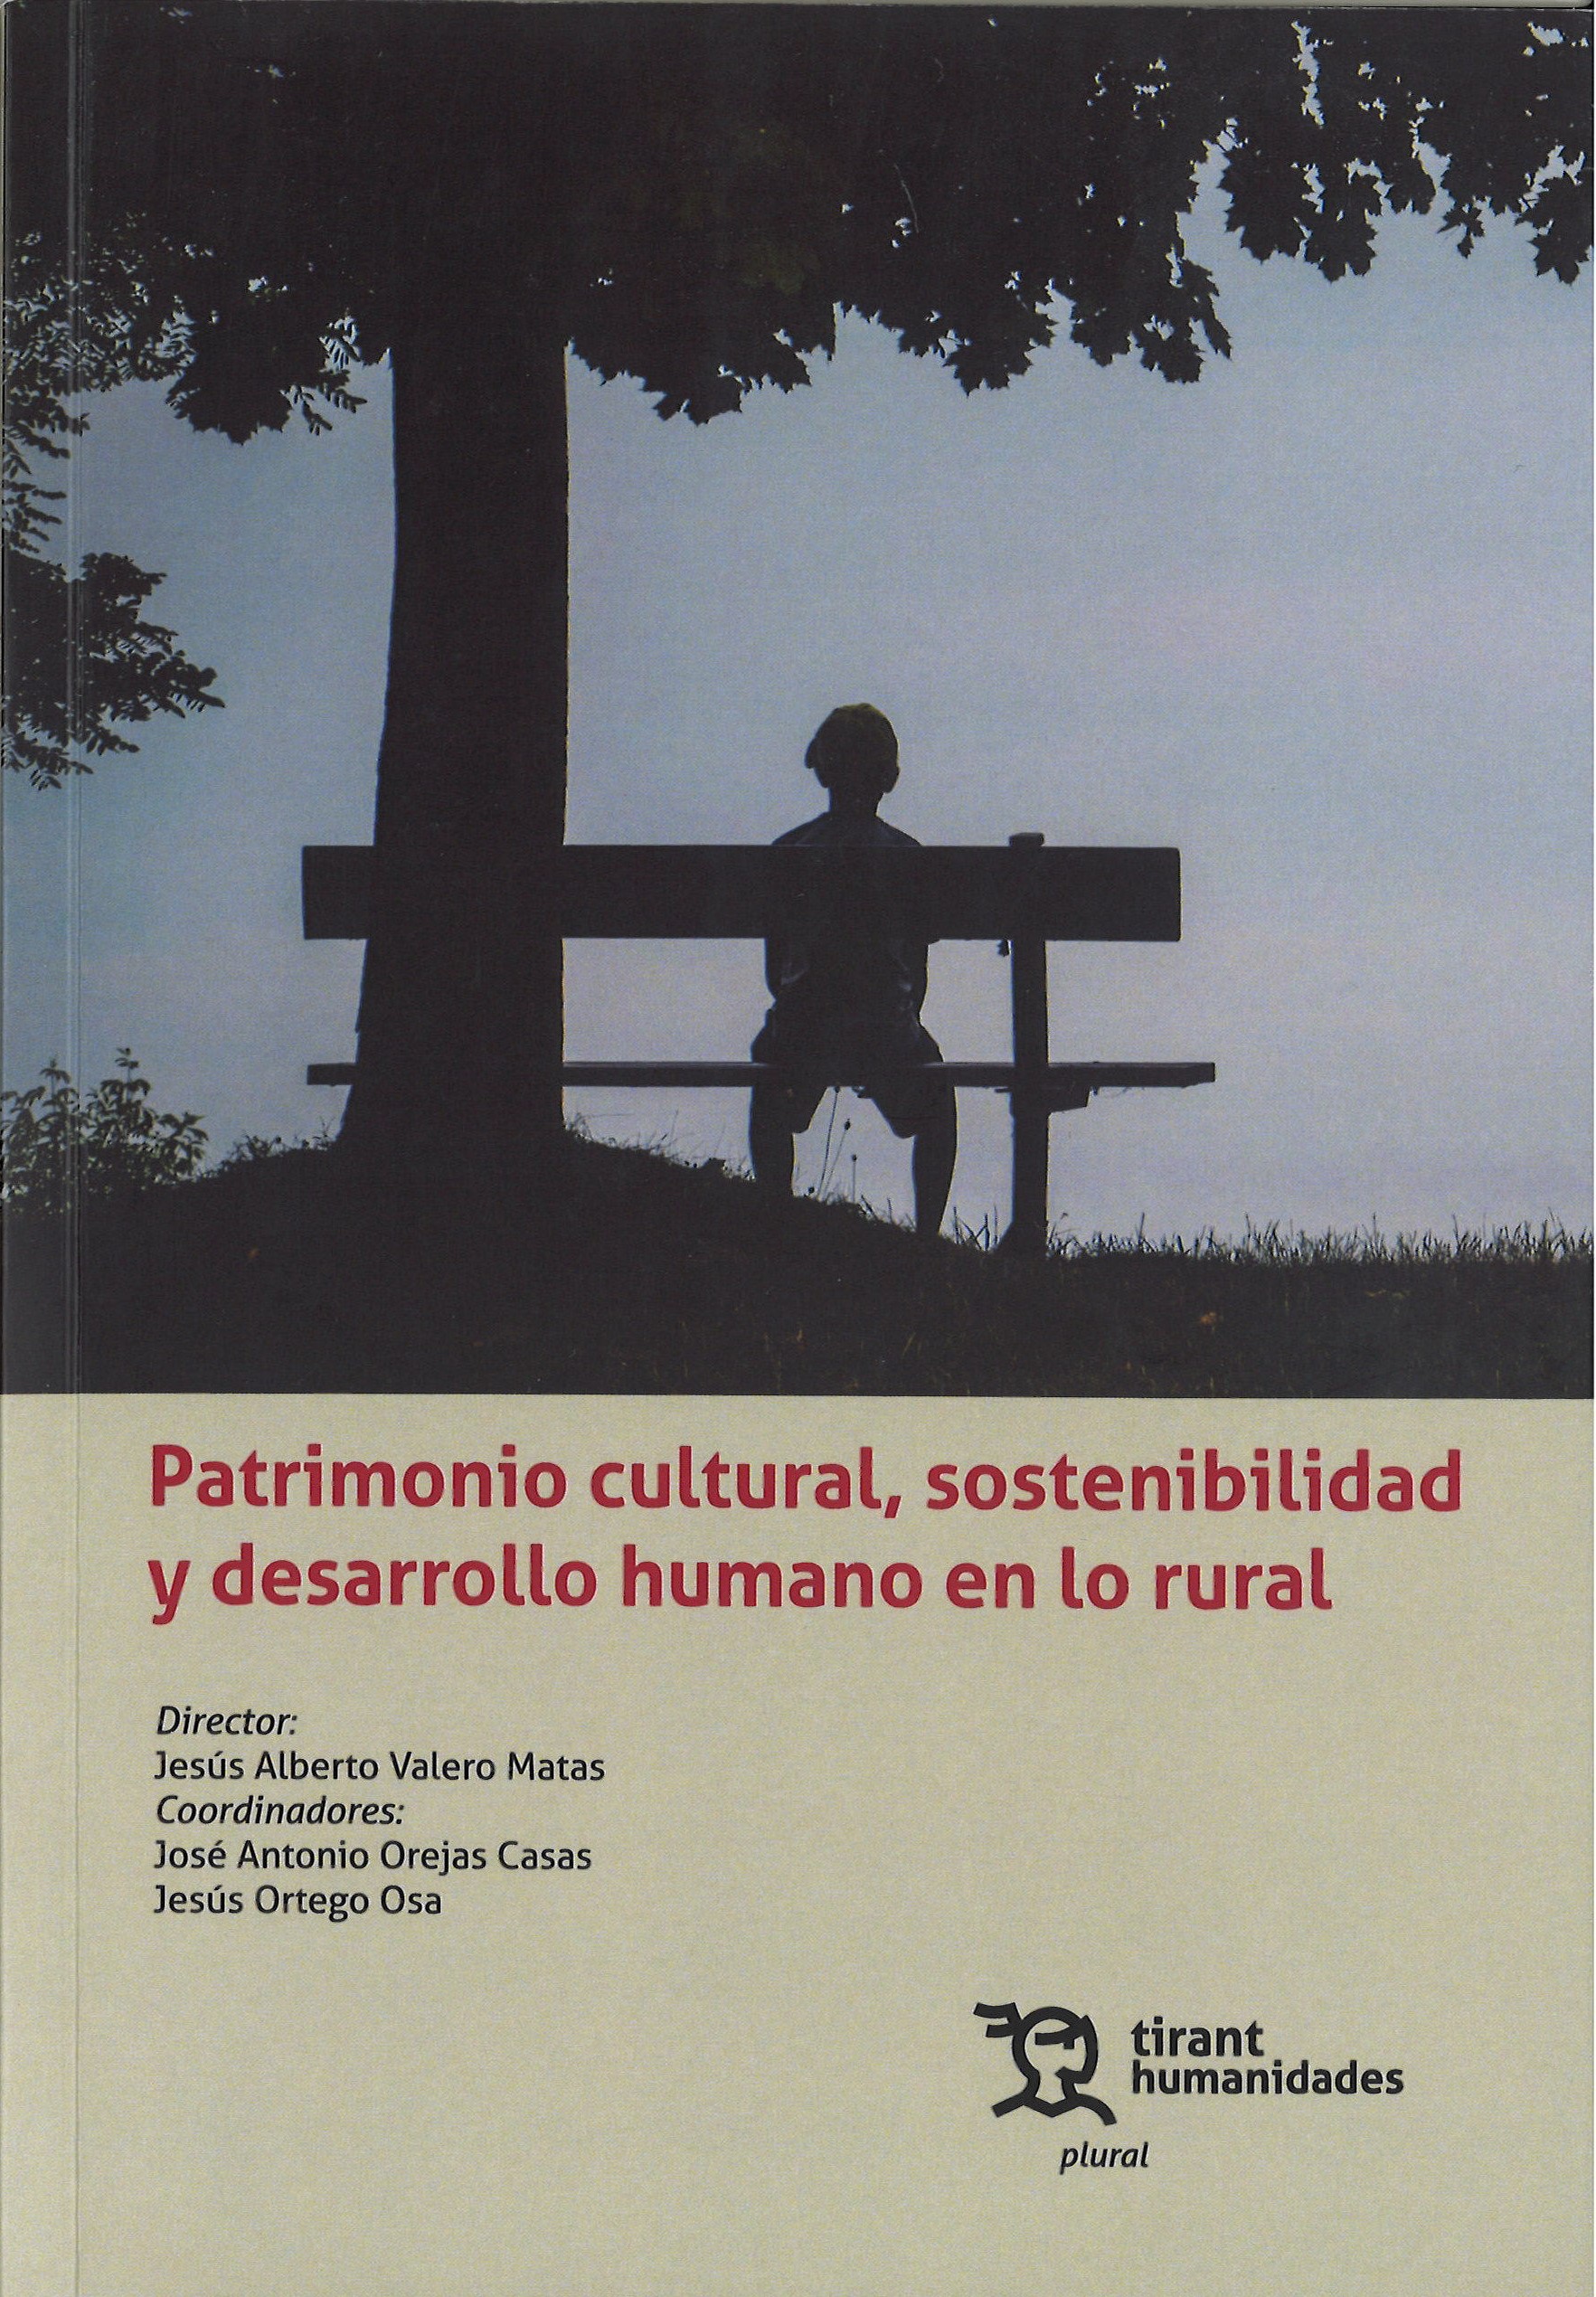 Imagen de portada del libro Patrimonio cultural, sostenibilidad y desarrollo humano en lo rural